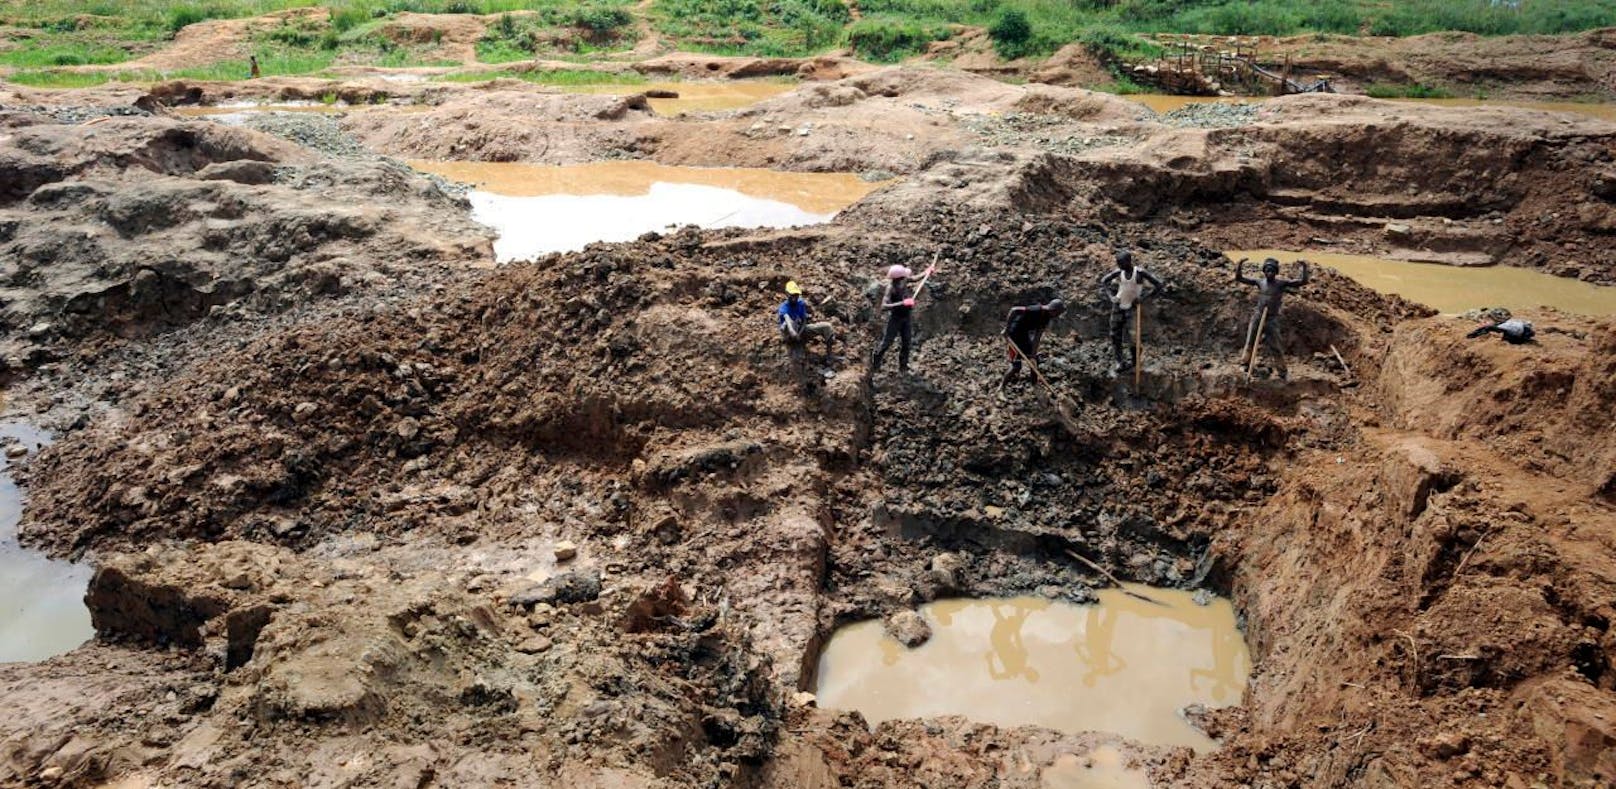 6 Bergarbeiter ersticken im Kongo in Goldmine